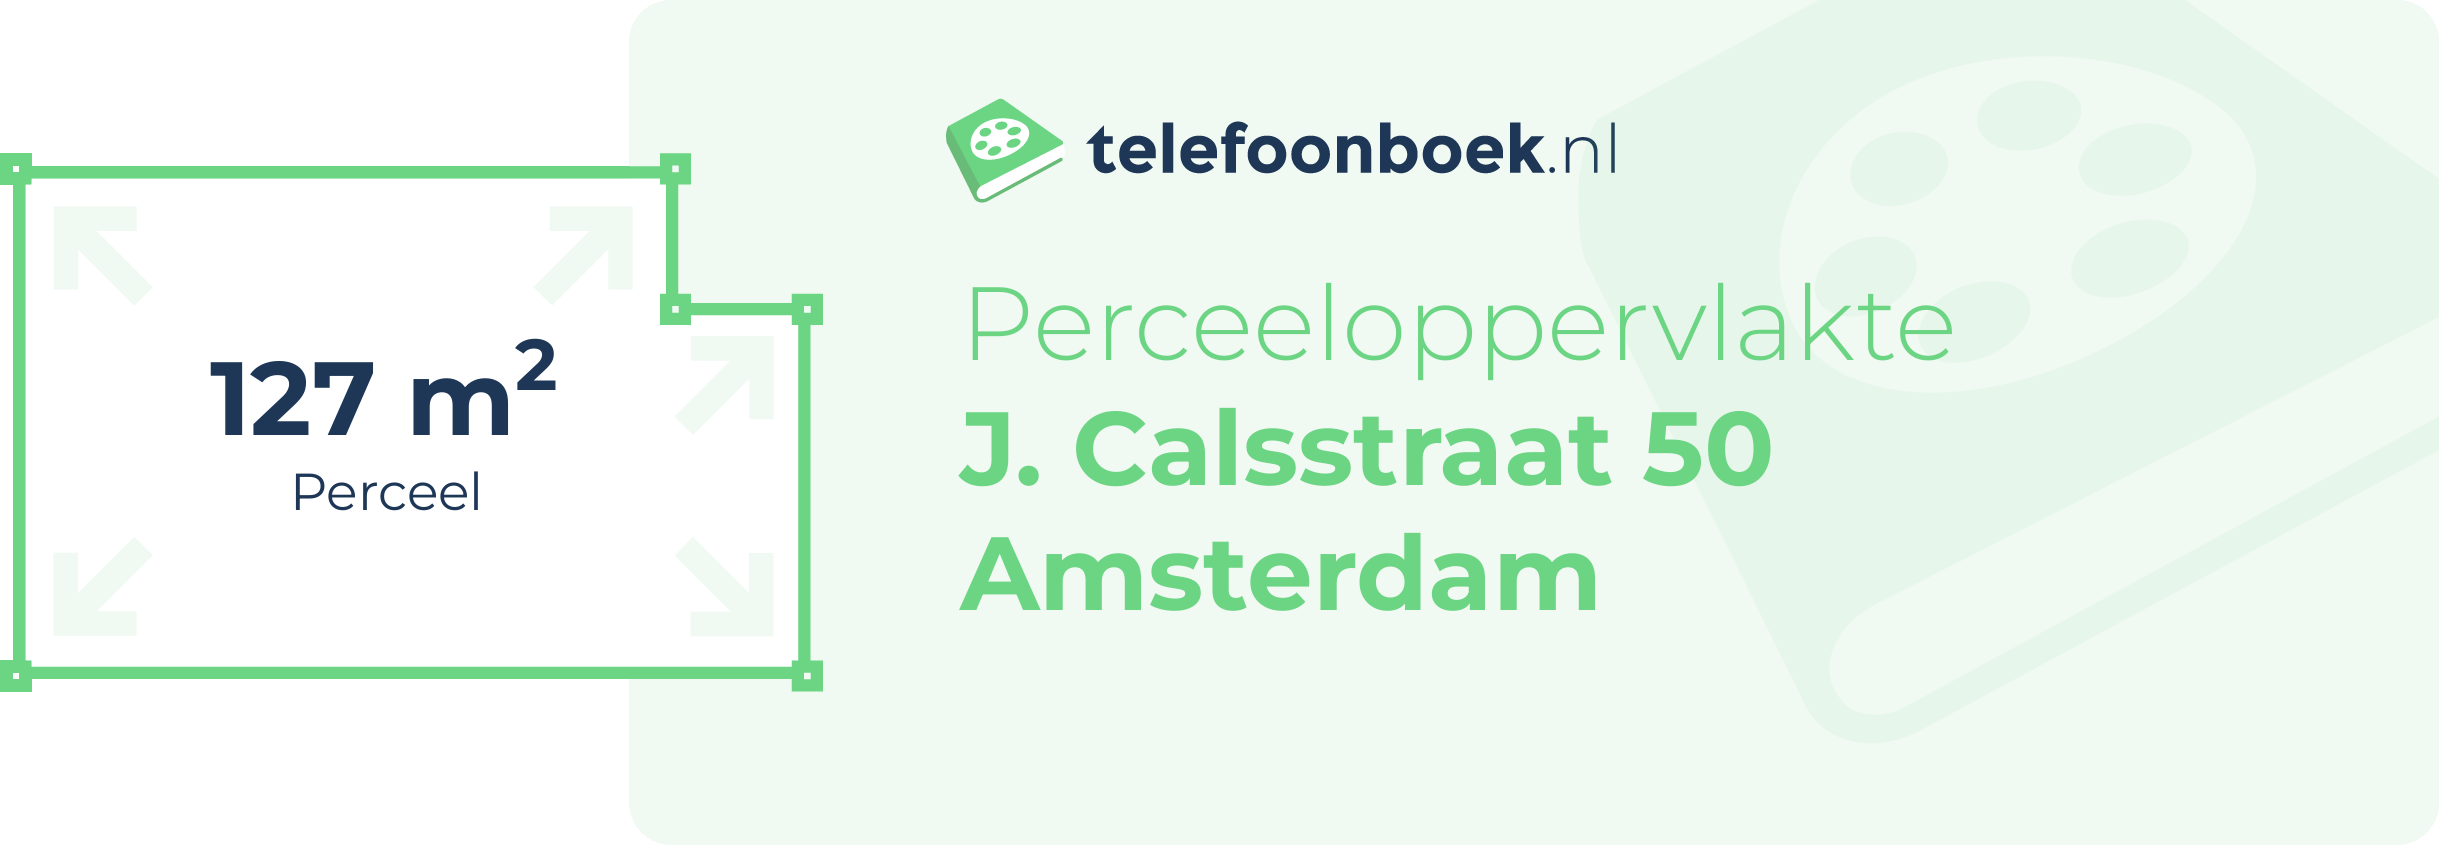 Perceeloppervlakte J. Calsstraat 50 Amsterdam